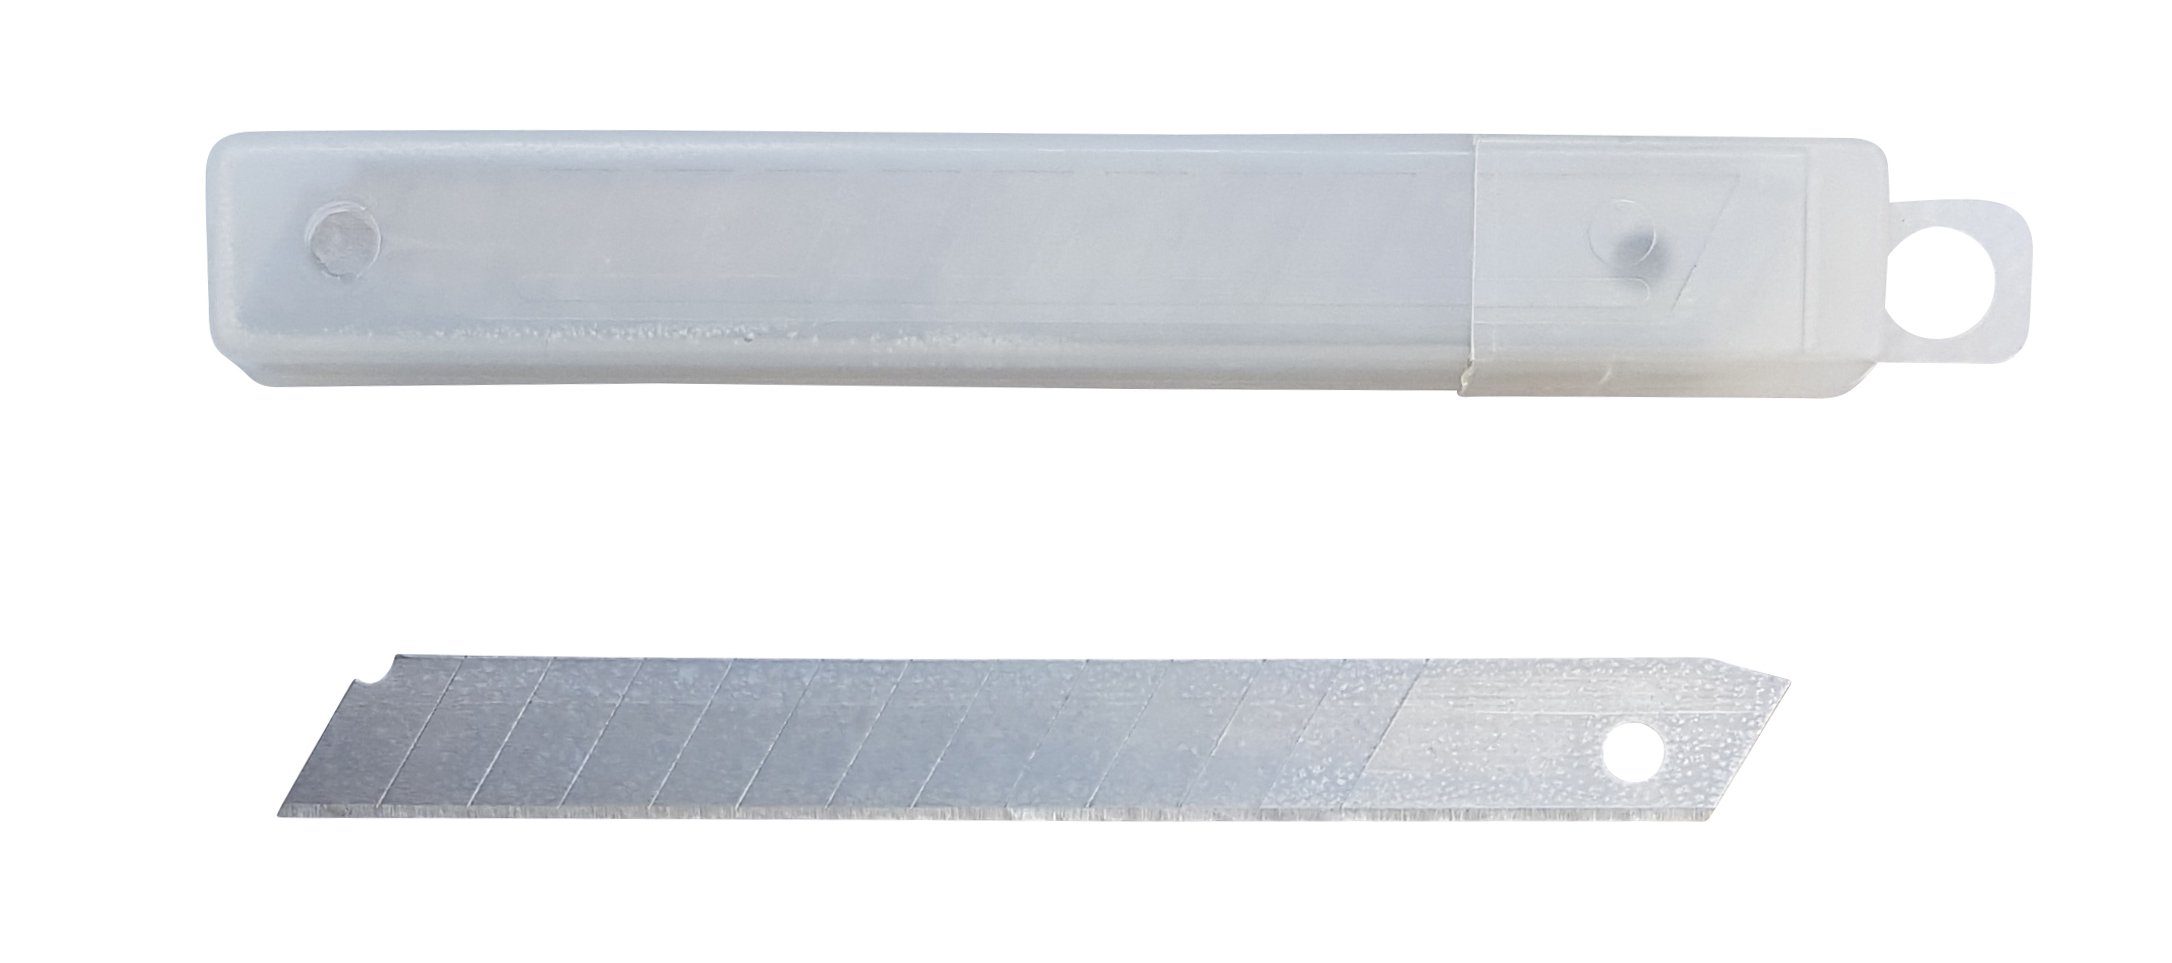 Cuttermesser Ersatz-Abbrechklinge 9mm ersatzklingen abbrechklingen cuttermesserklin